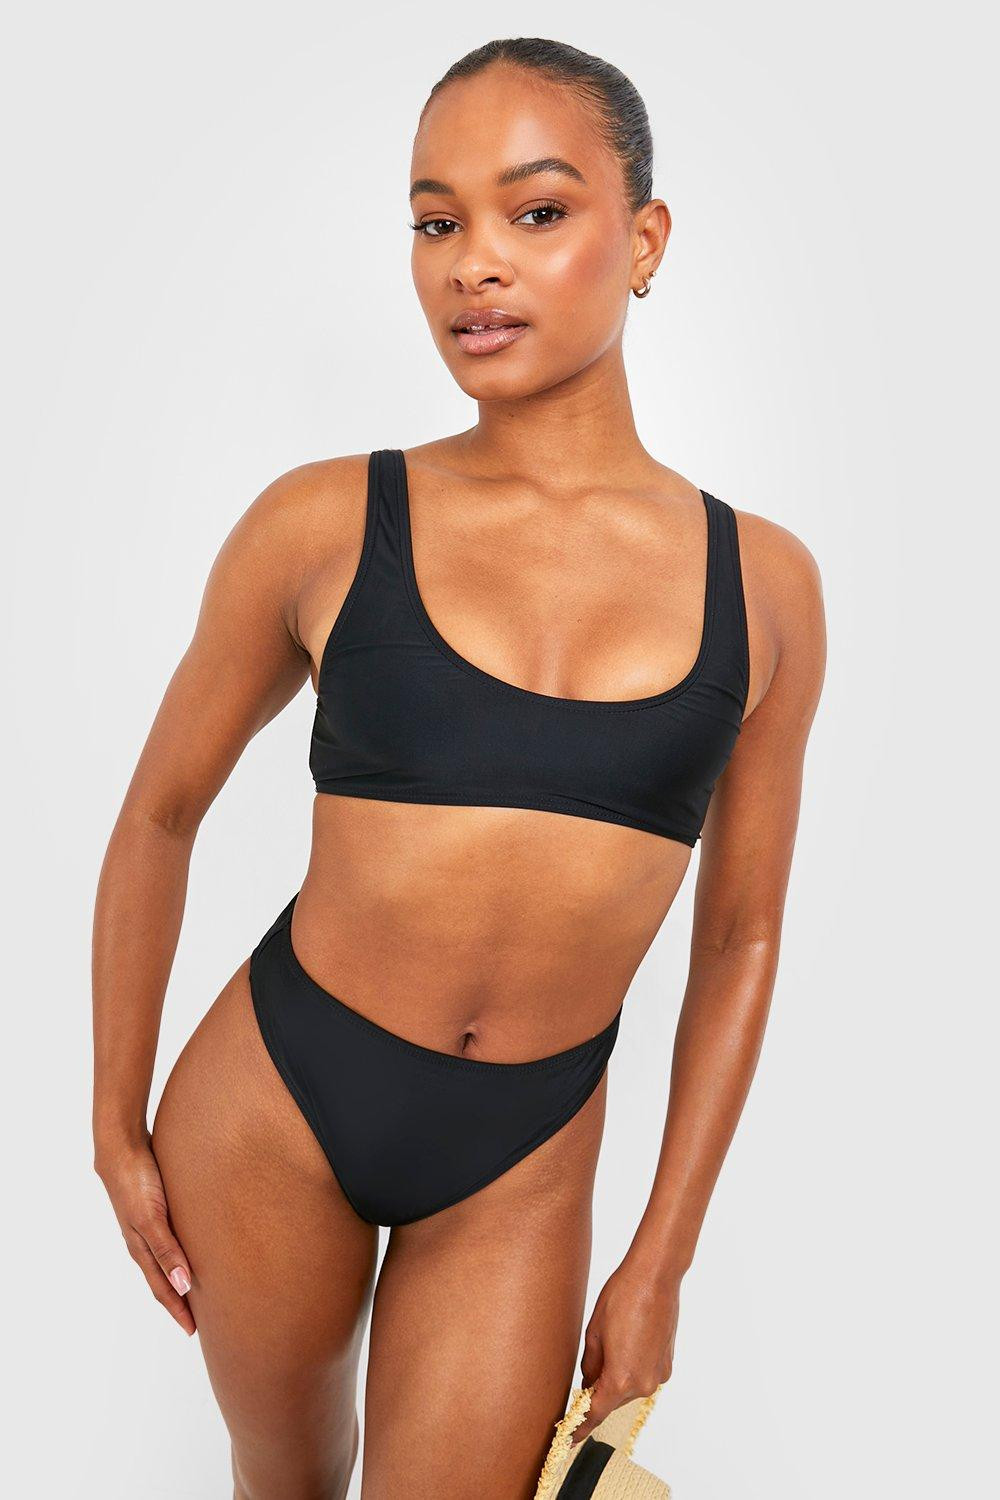 czarny dwuczęściowy strój kąpielowy komplet bikini